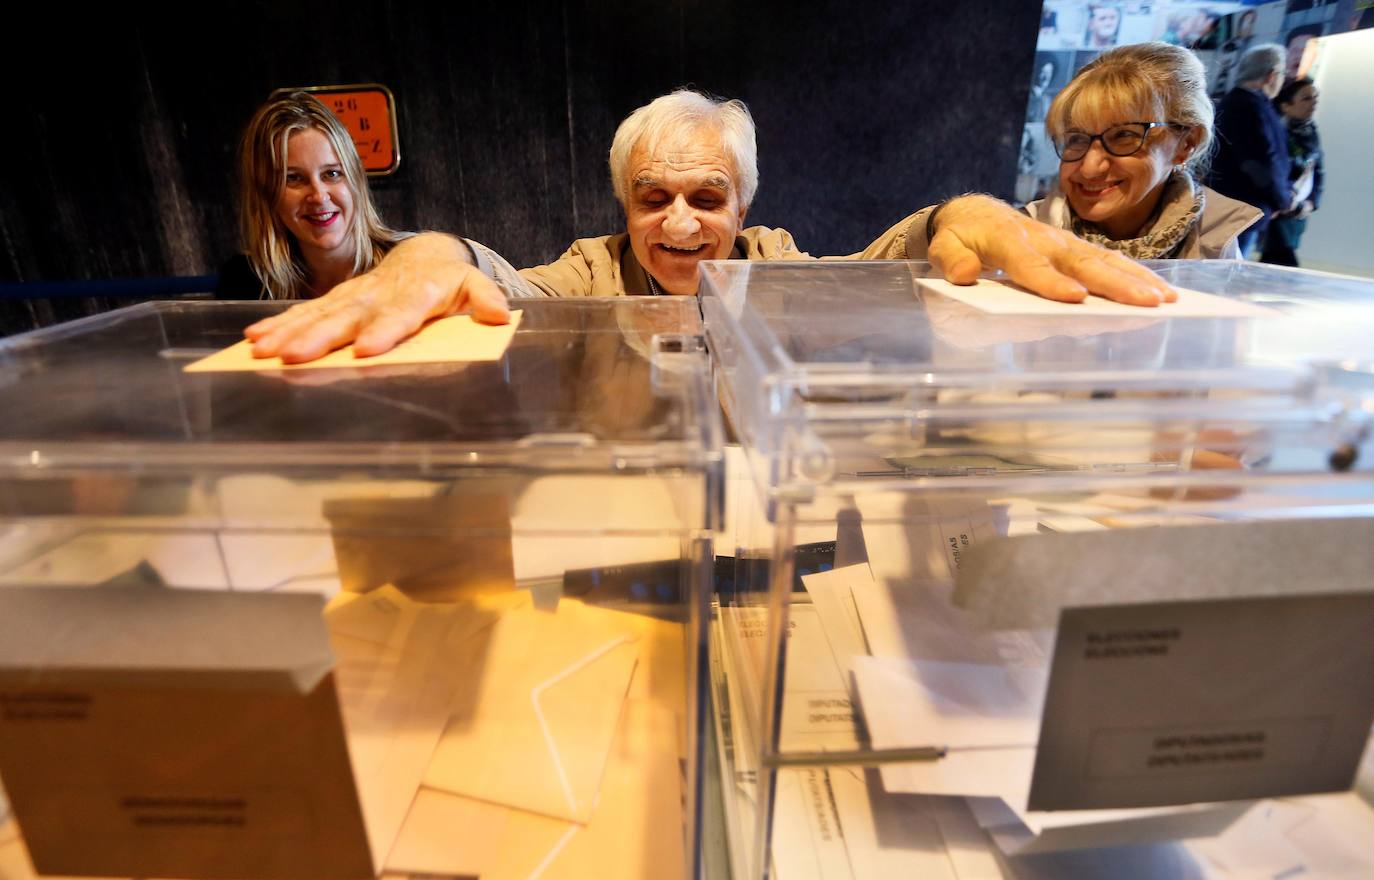 El invidente César Puente Fuente preside una mesa electoral en la ciudad de Alicante con la ayuda de una amiga.